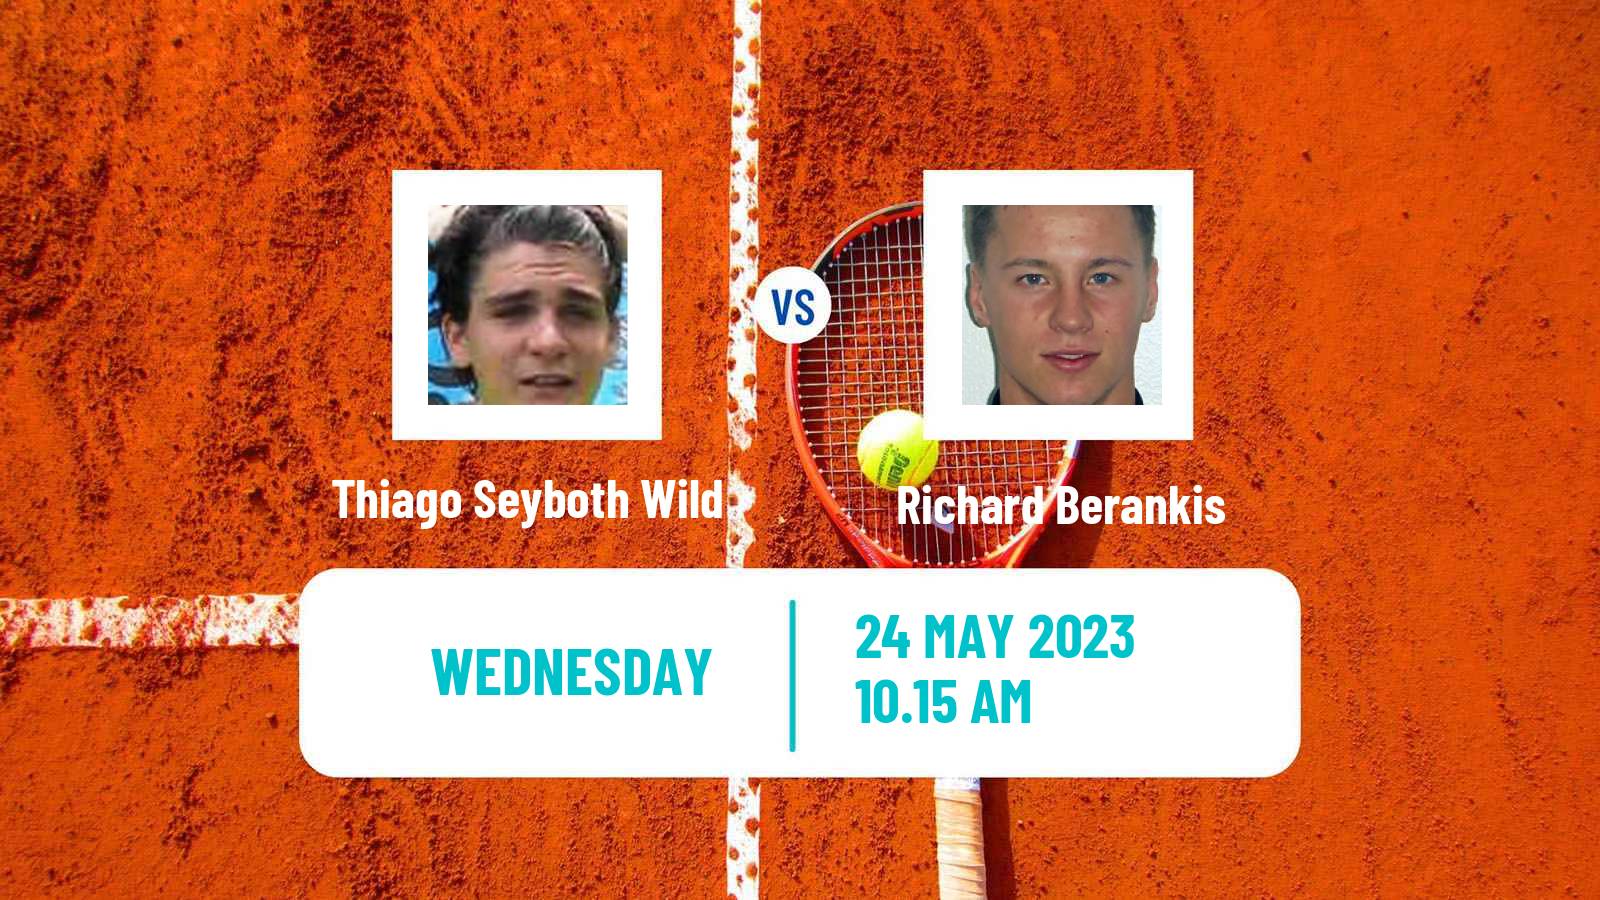 Tennis ATP Roland Garros Thiago Seyboth Wild - Richard Berankis